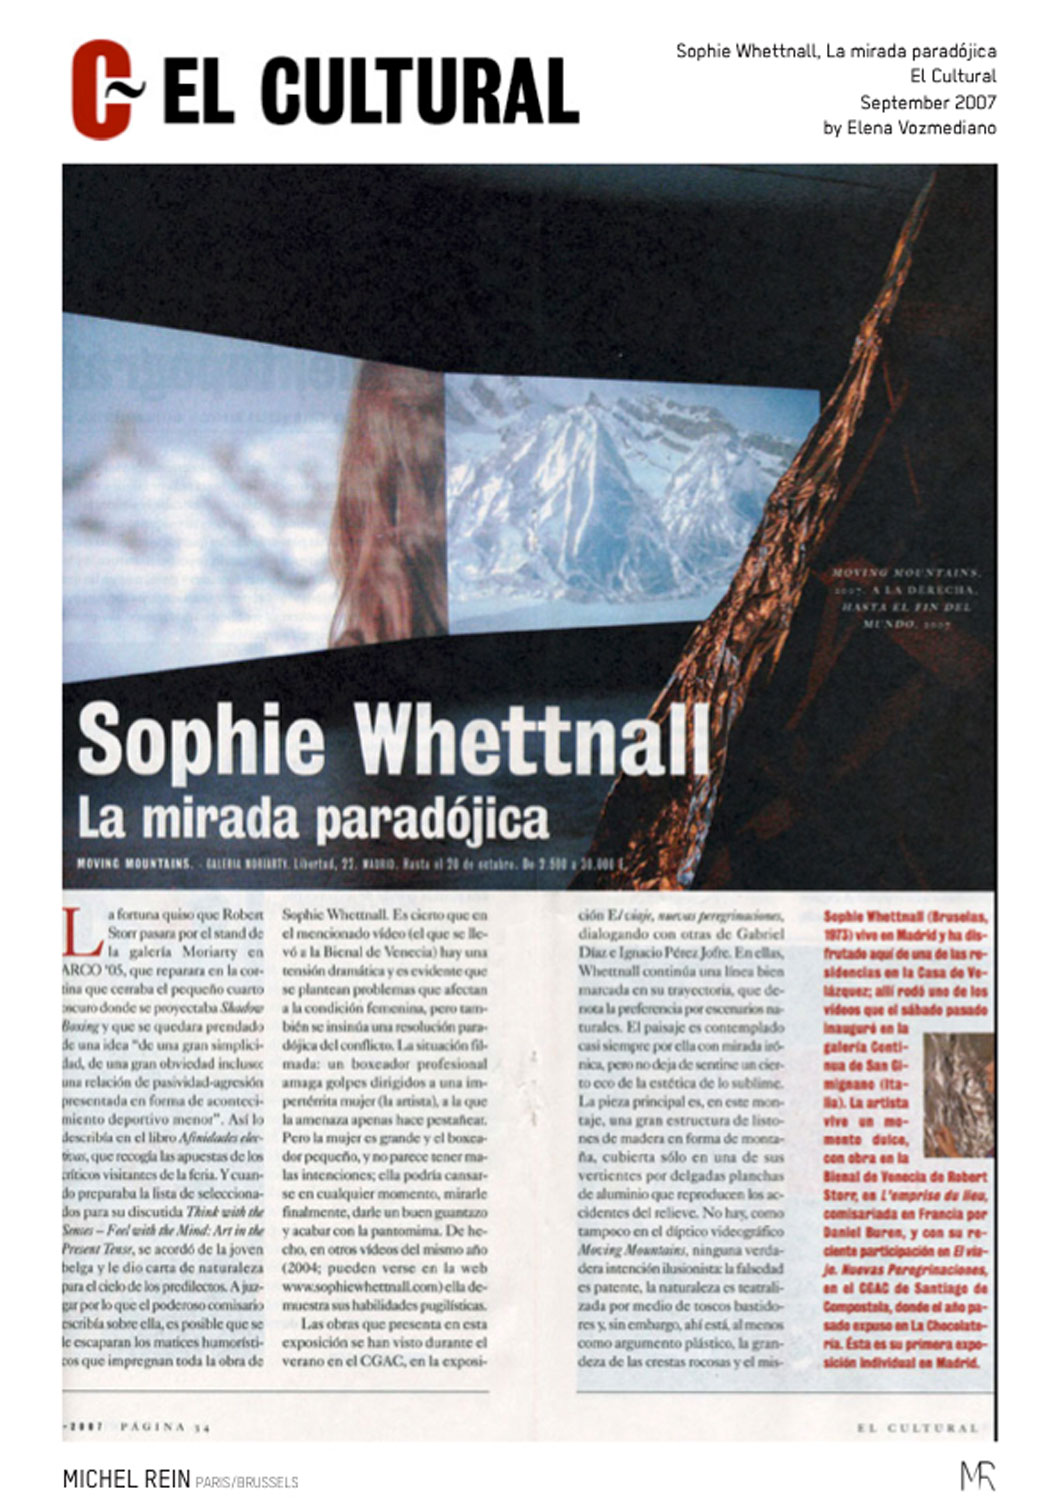 Sophie Whettnall, La mirada paradjica - El Cultural